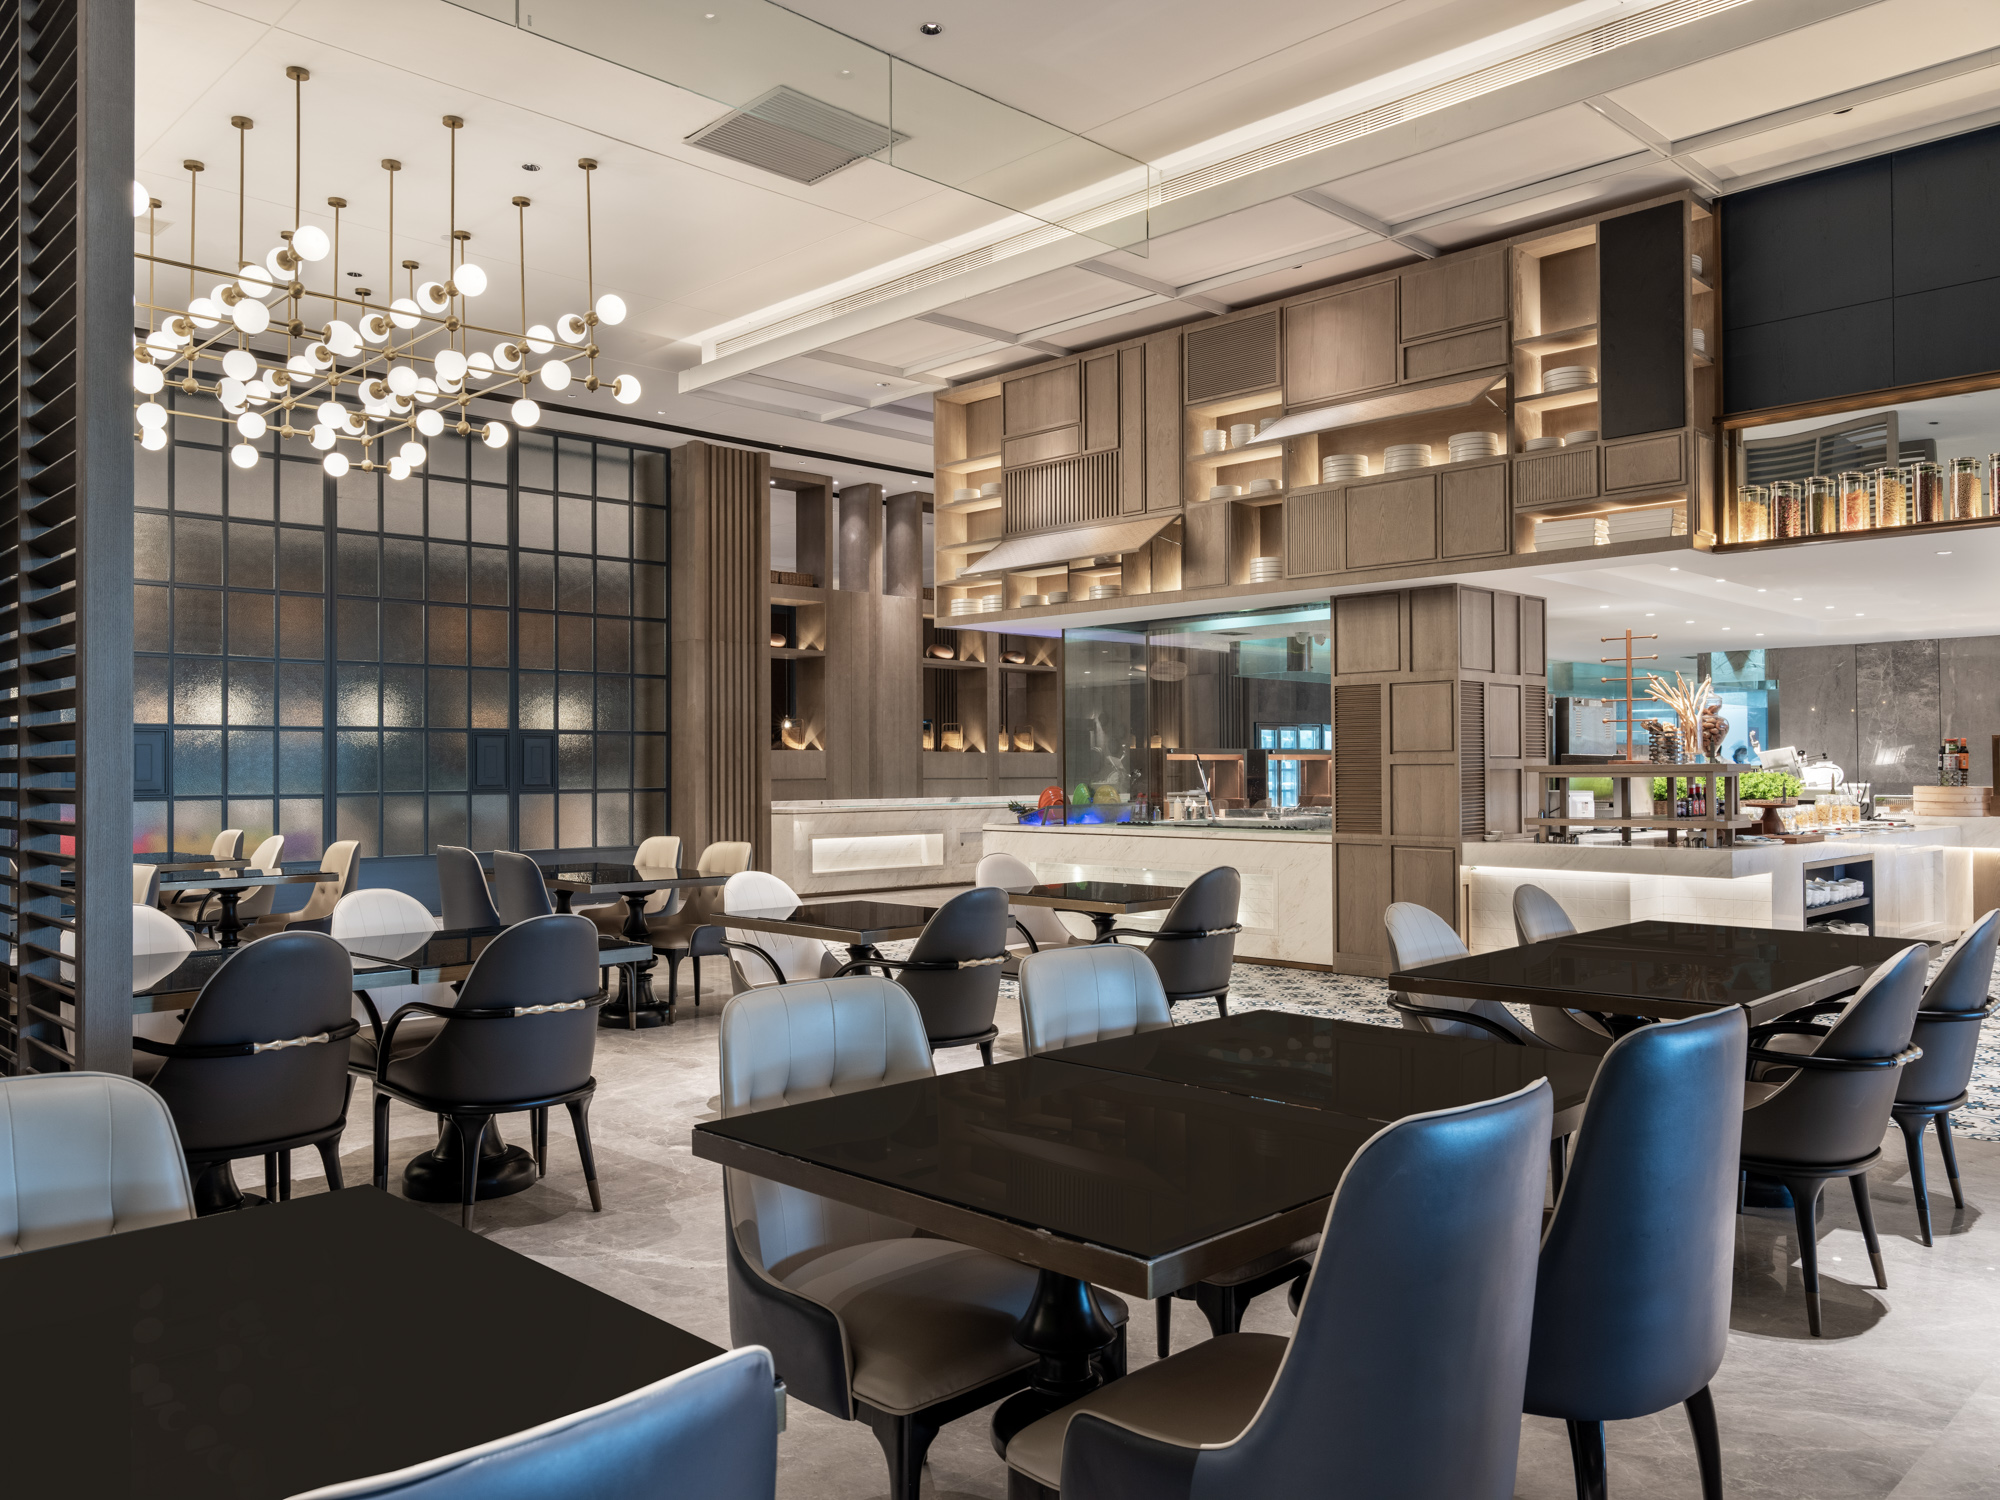 2023宜兴竹海国际会议中心(竹海温泉)·中餐厅美食餐厅,非常惬意的一次旅行。酒店的...【去哪儿攻略】